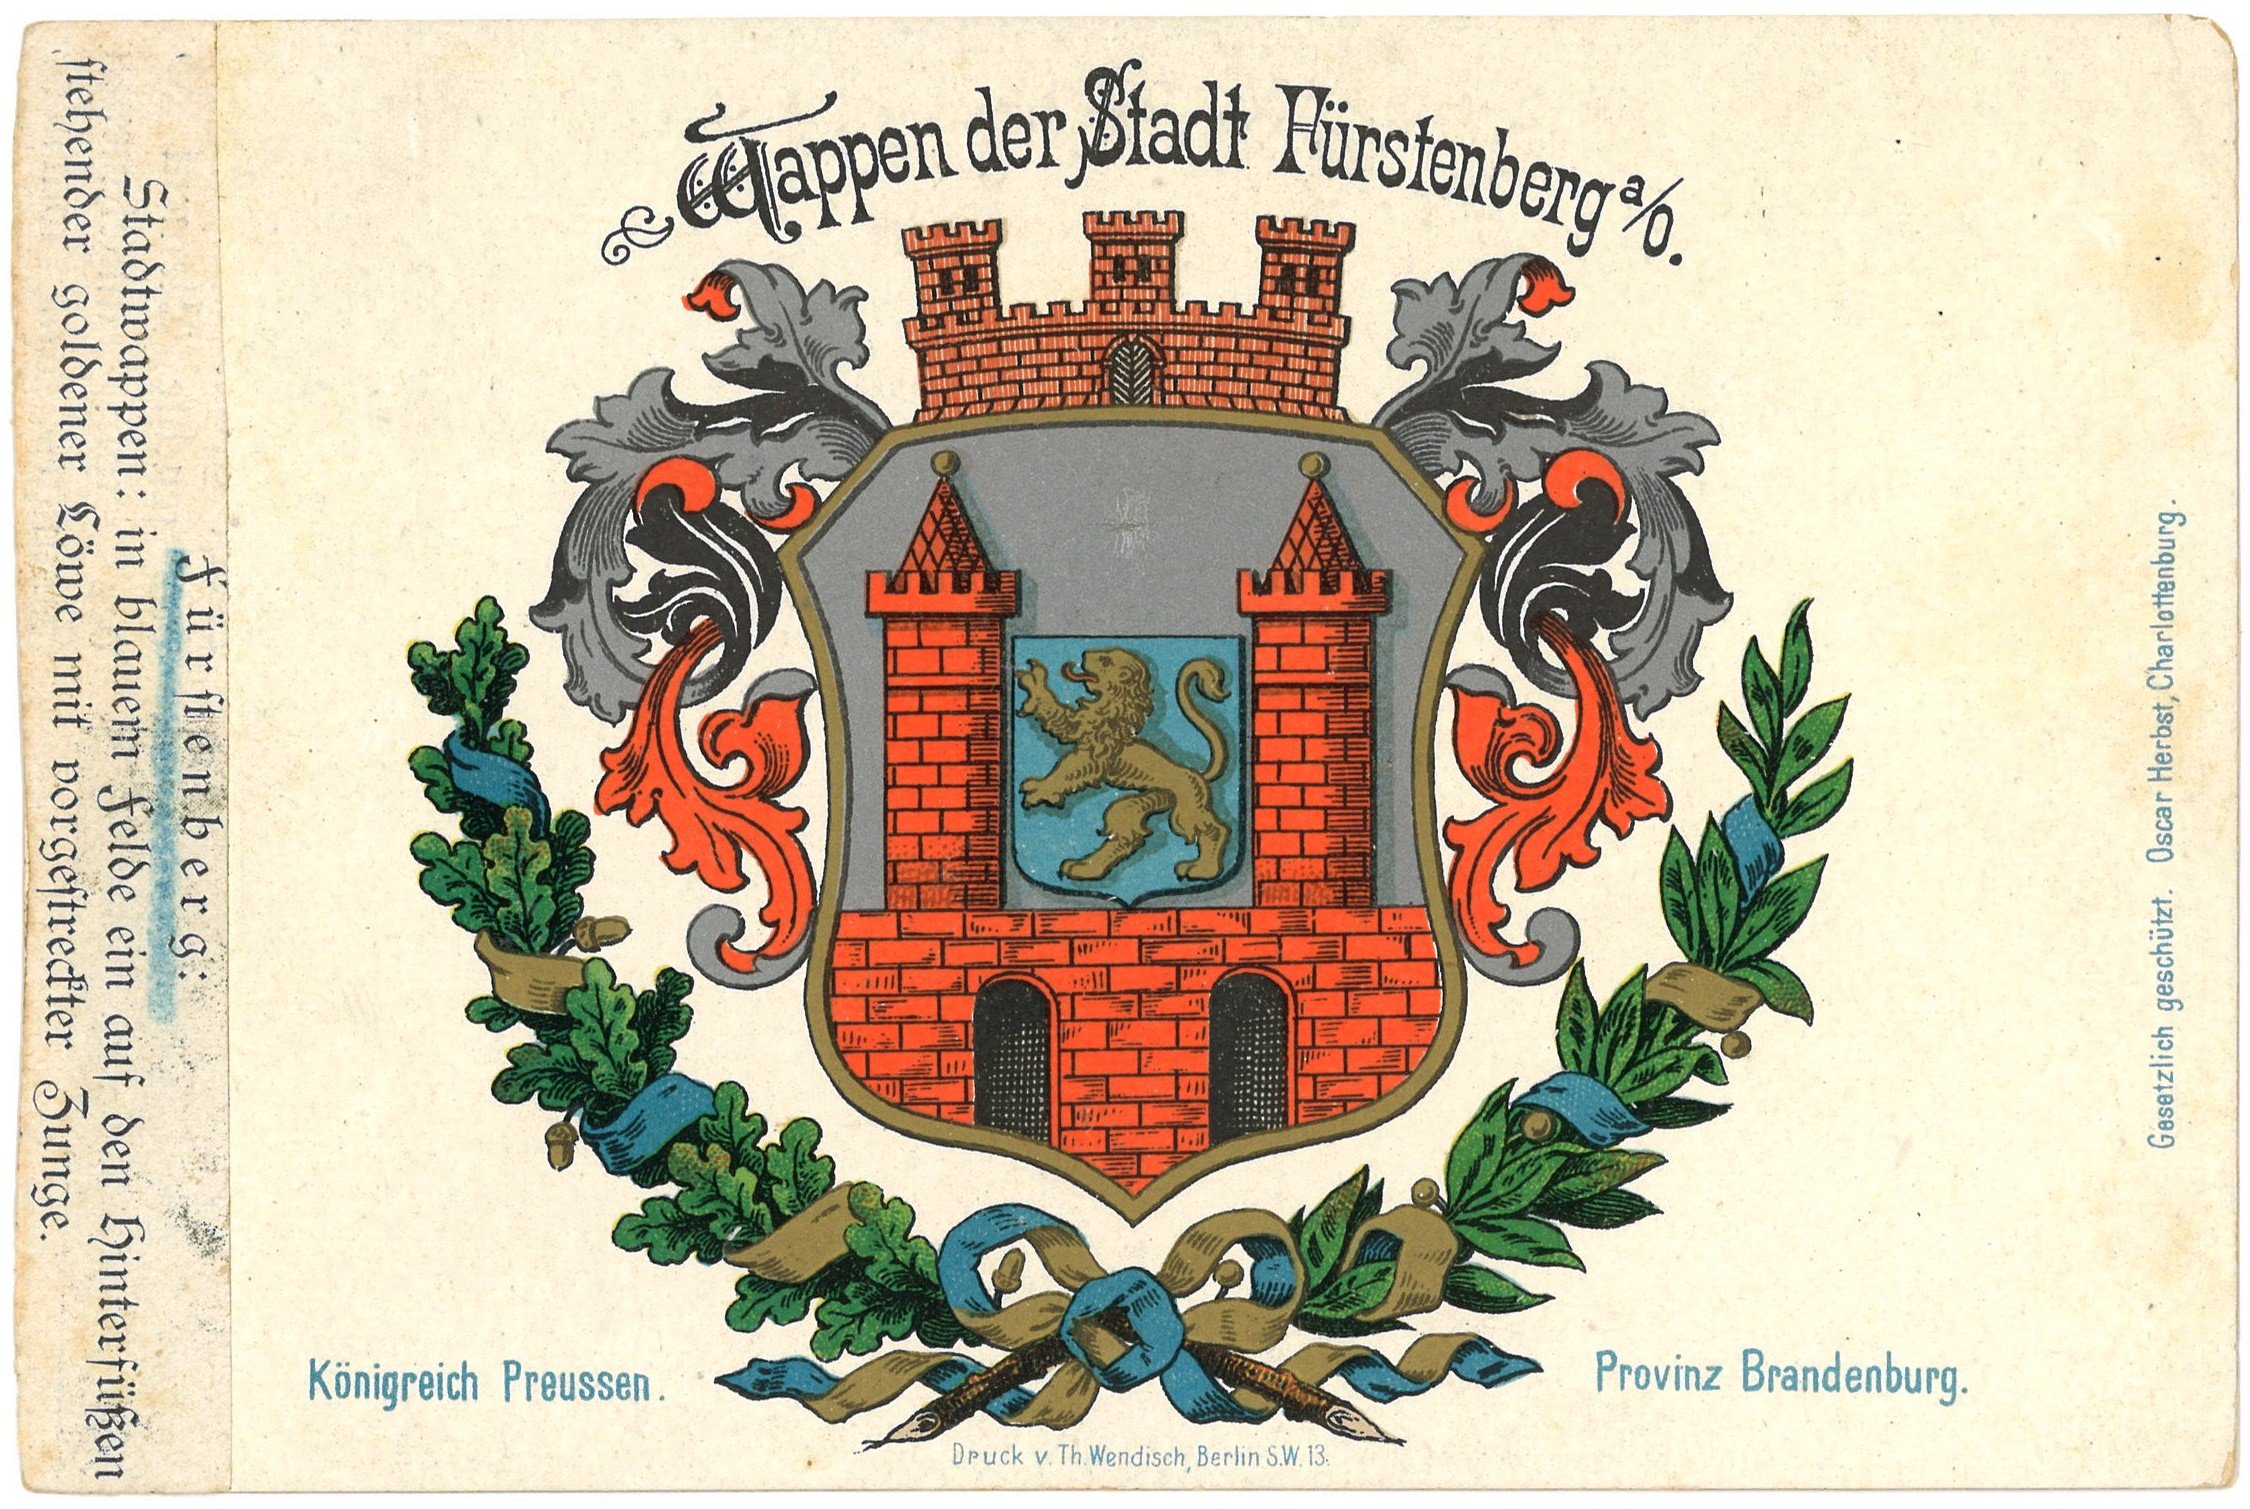 Fürstenberg (Oder): Stadtwappen (Landesgeschichtliche Vereinigung für die Mark Brandenburg e.V., Archiv CC BY)